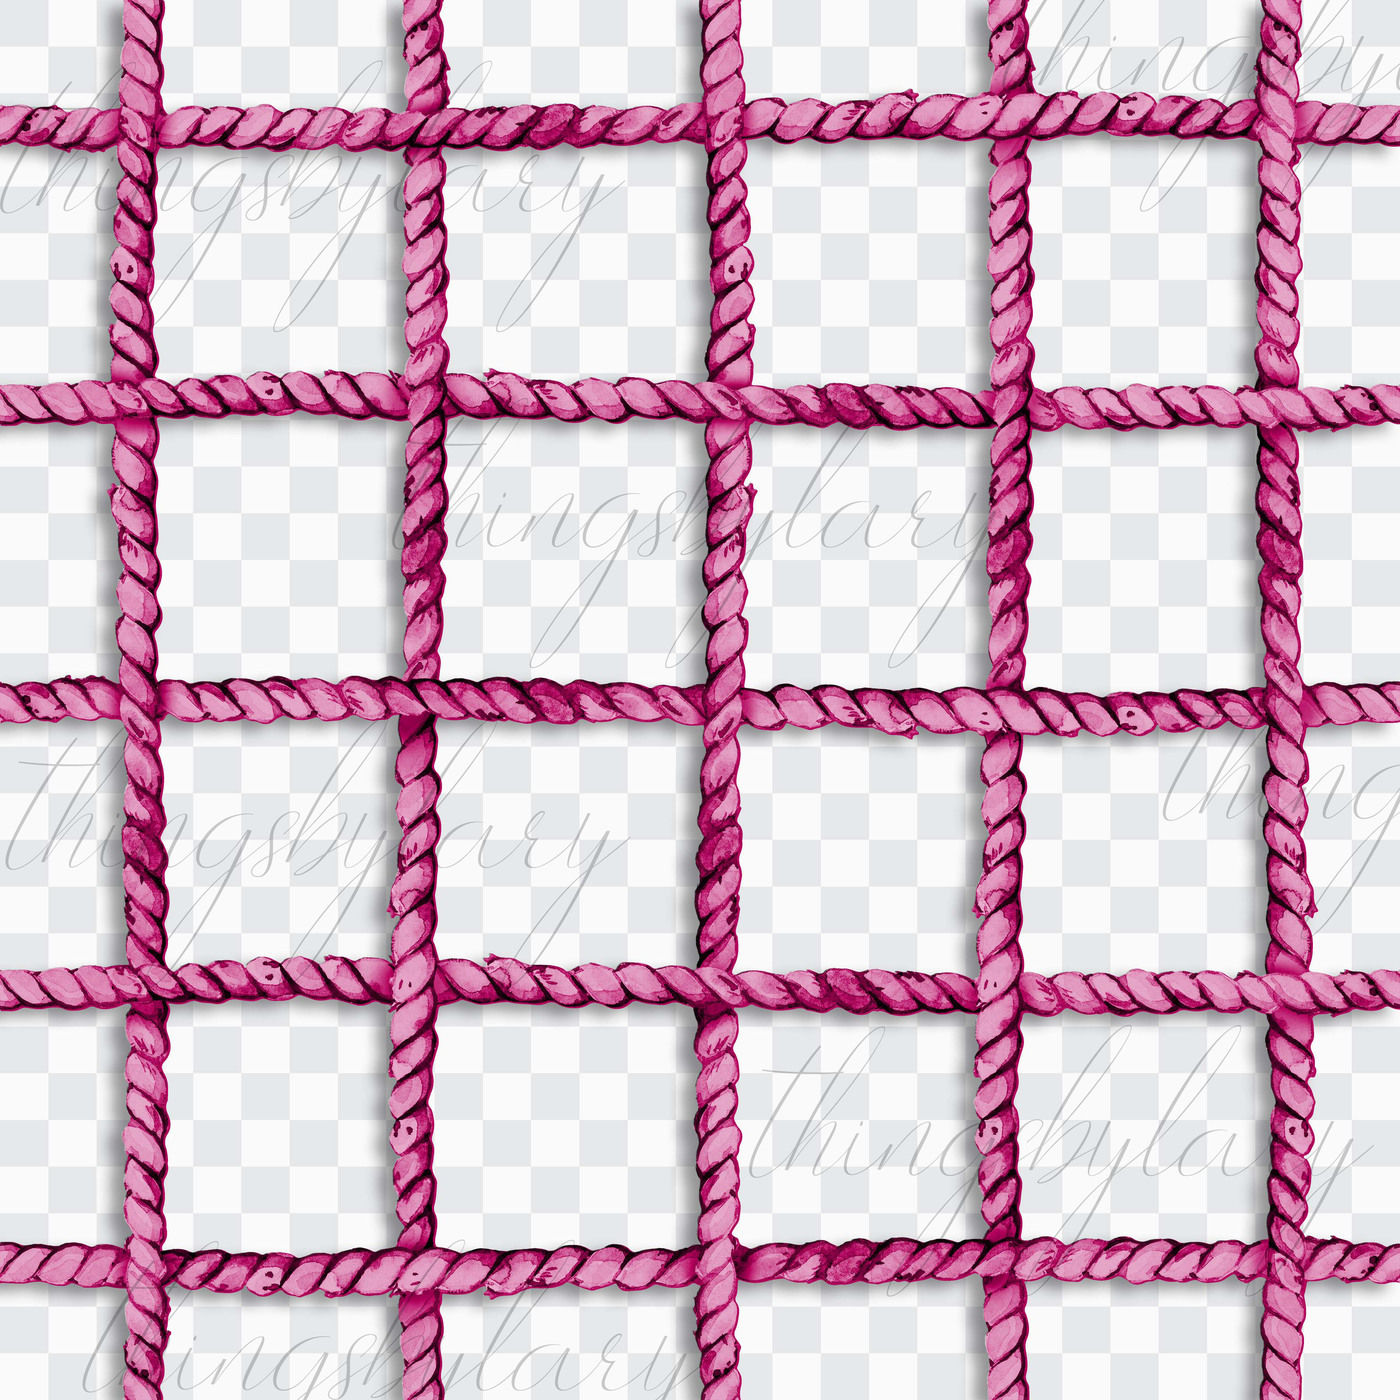 Free: Rope Net Seamless Pattern 